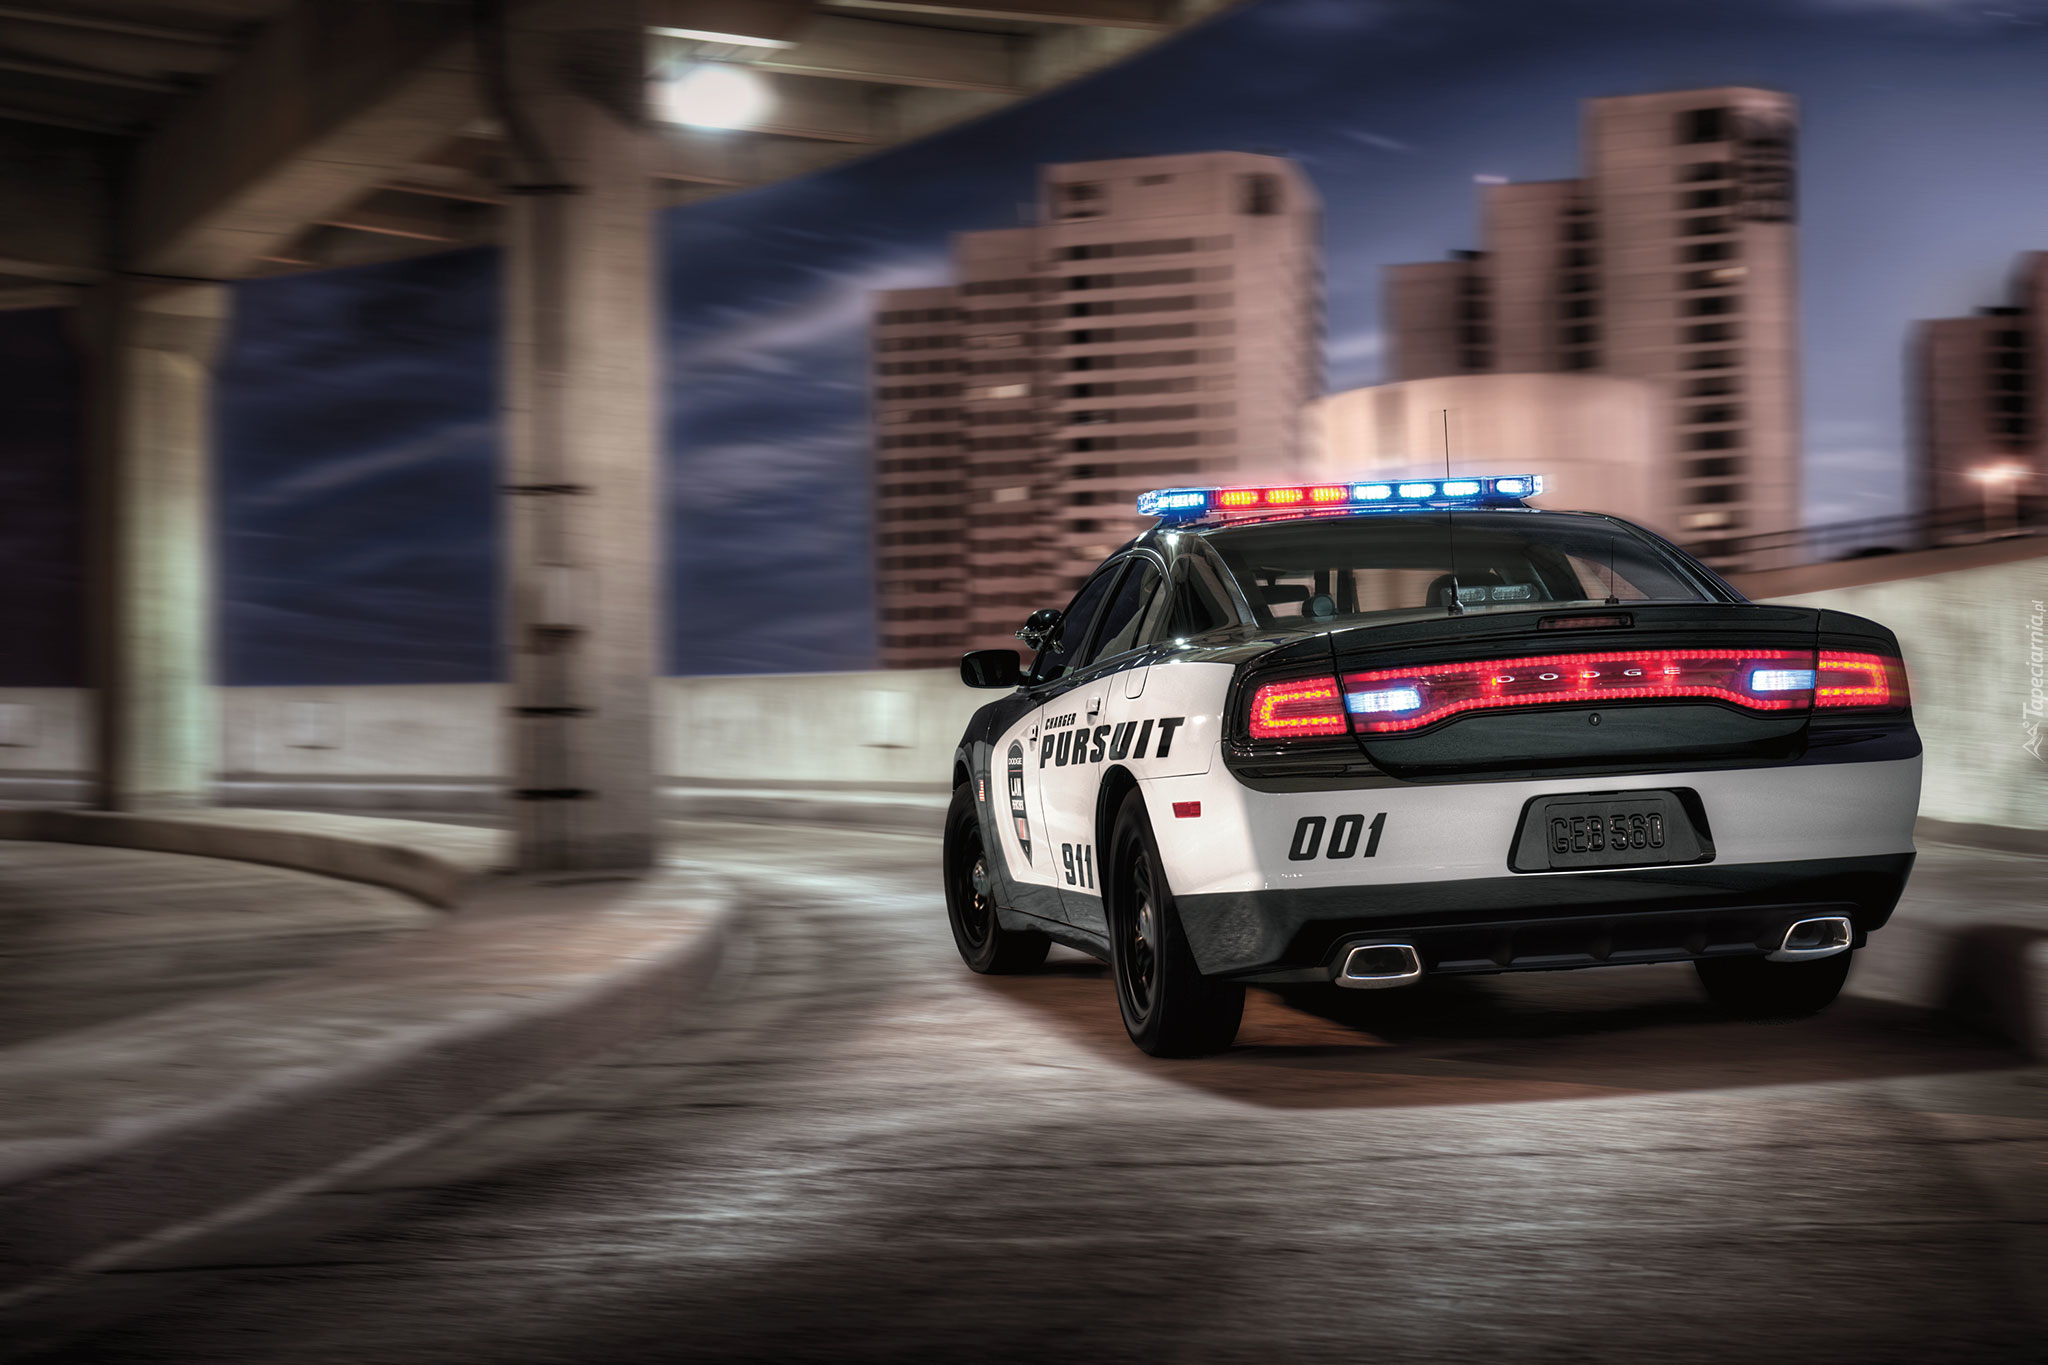 Samochód, Policyjny, Dodge Charger, 2011